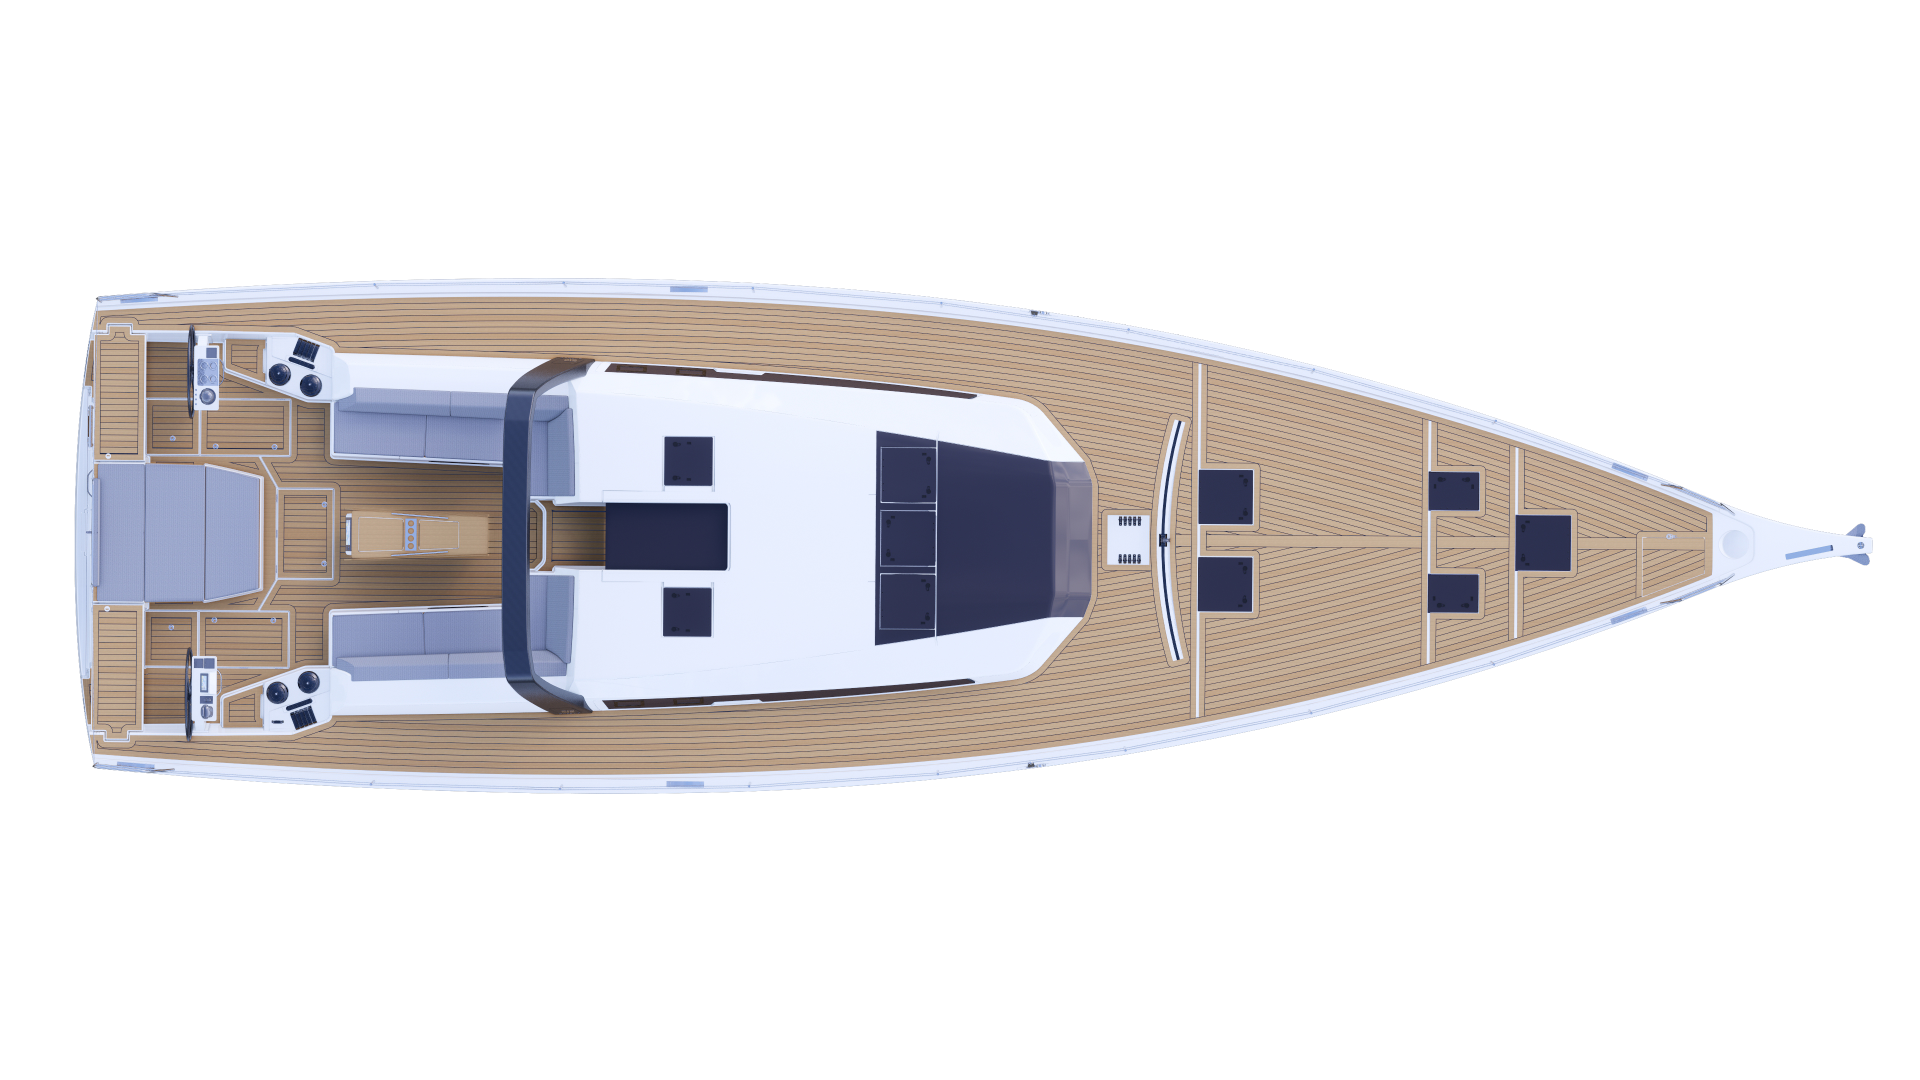 dufour yachts 61